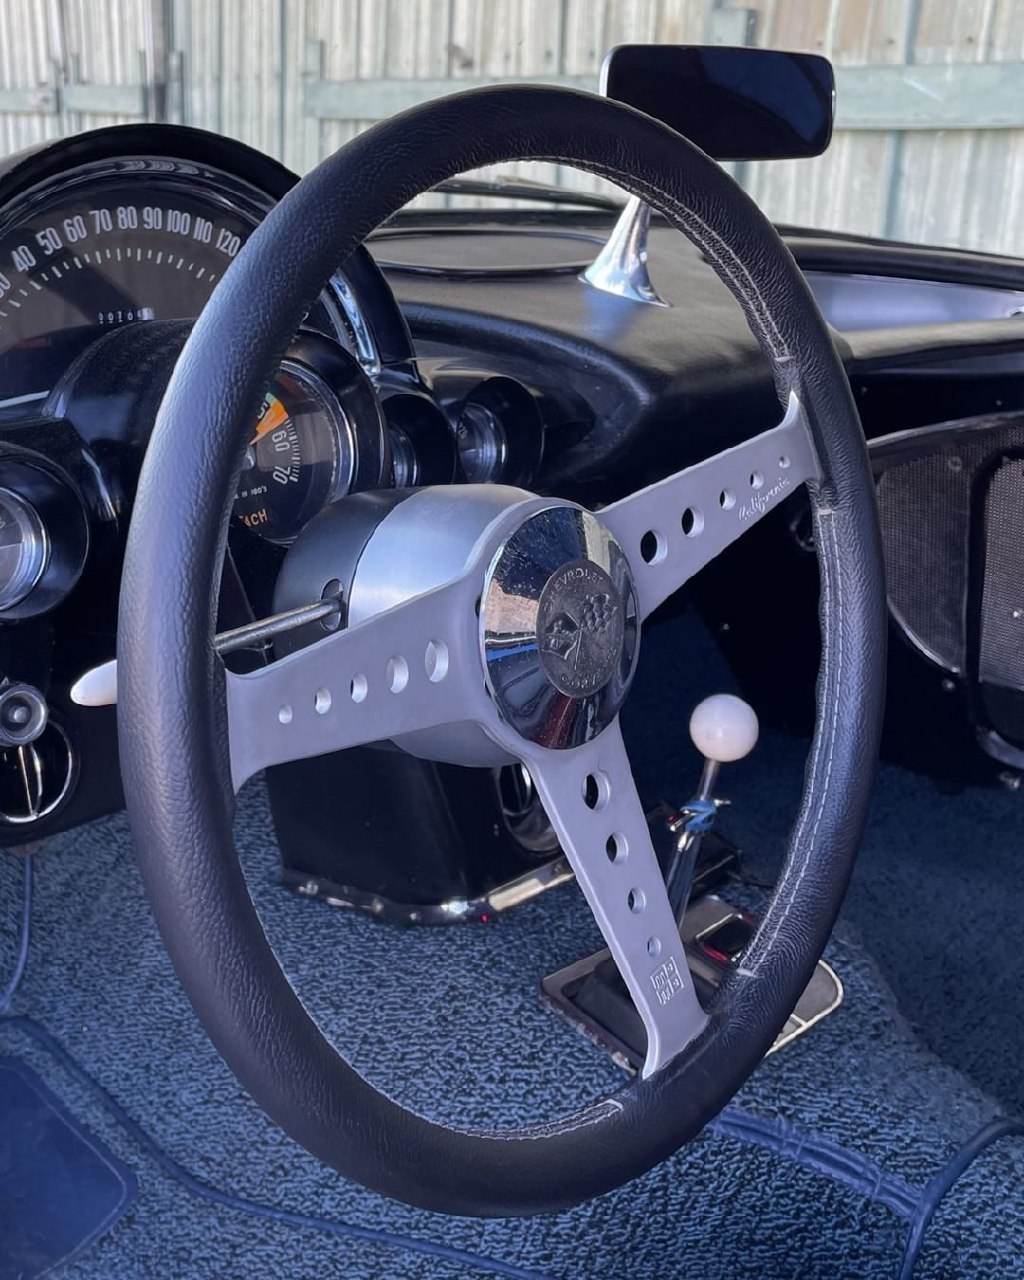 Chevrolet Corvette 1960